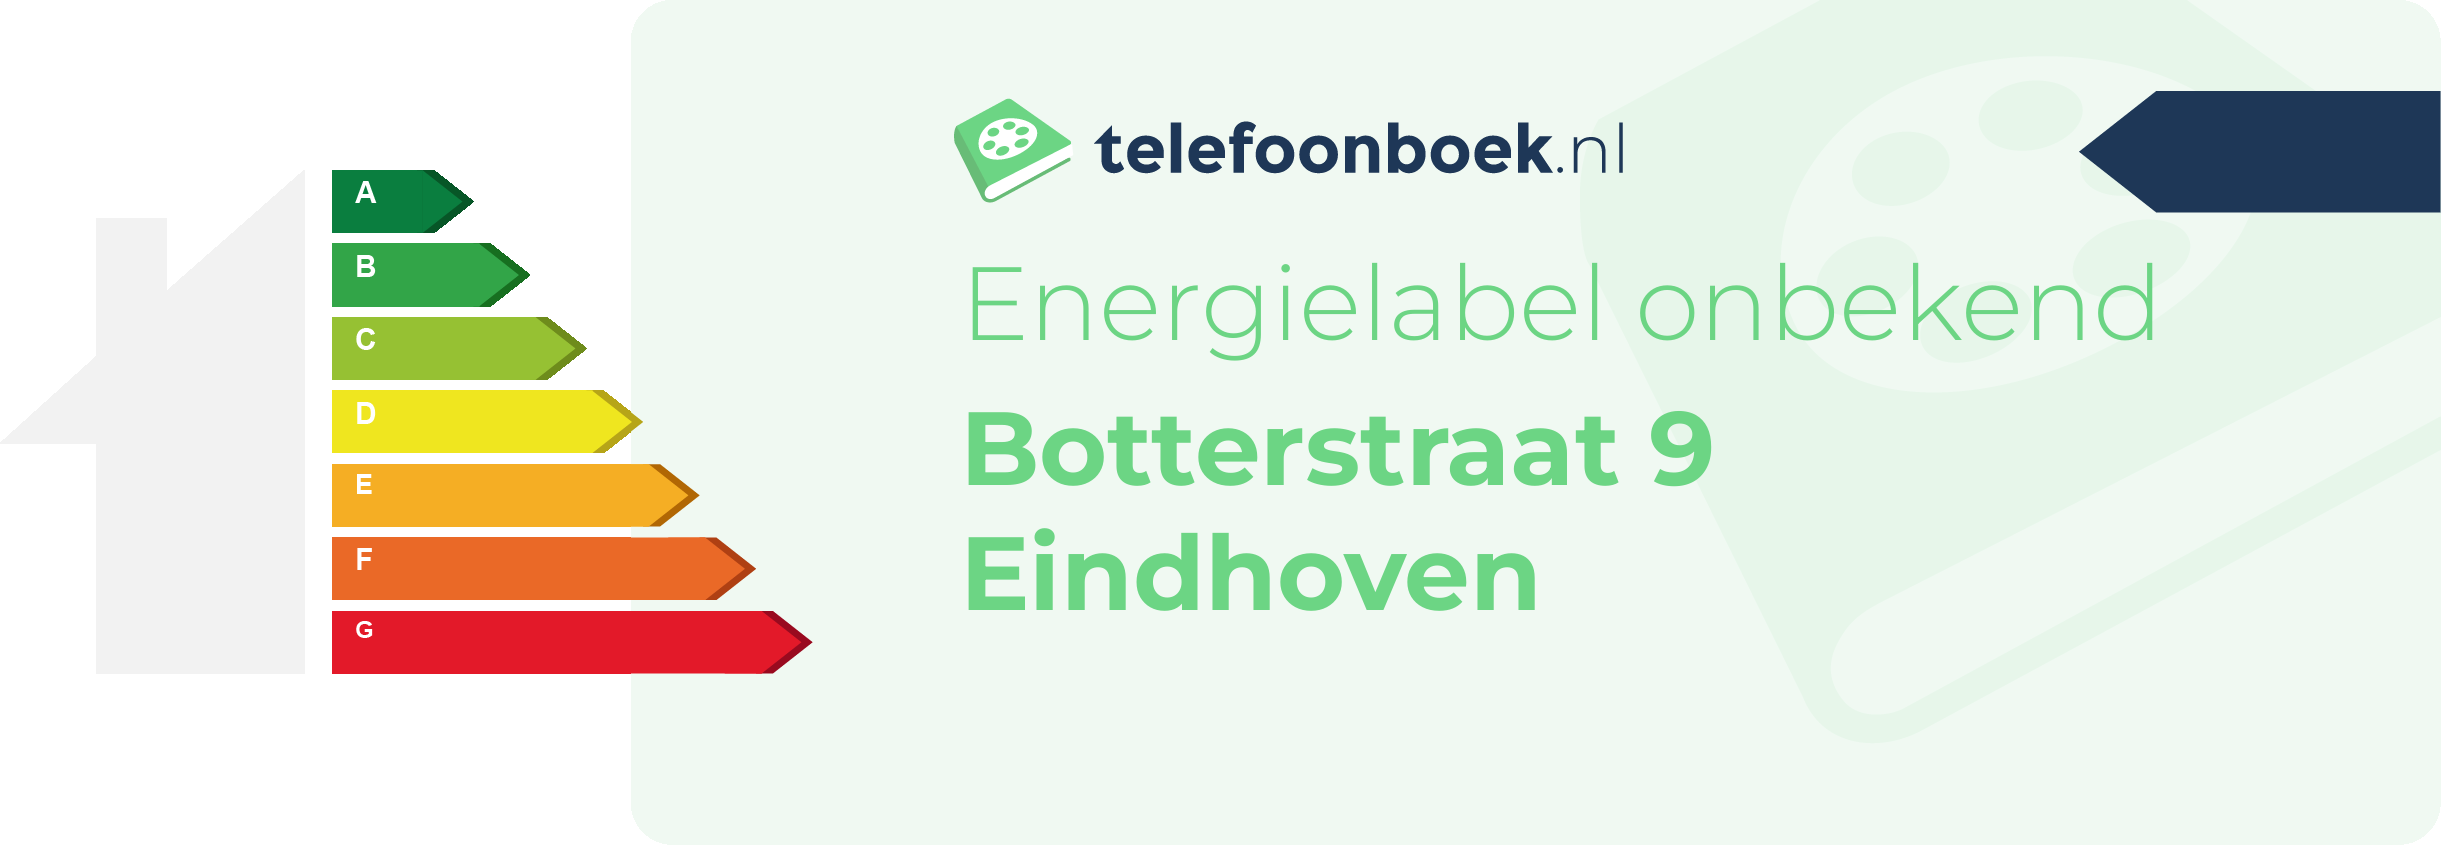 Energielabel Botterstraat 9 Eindhoven